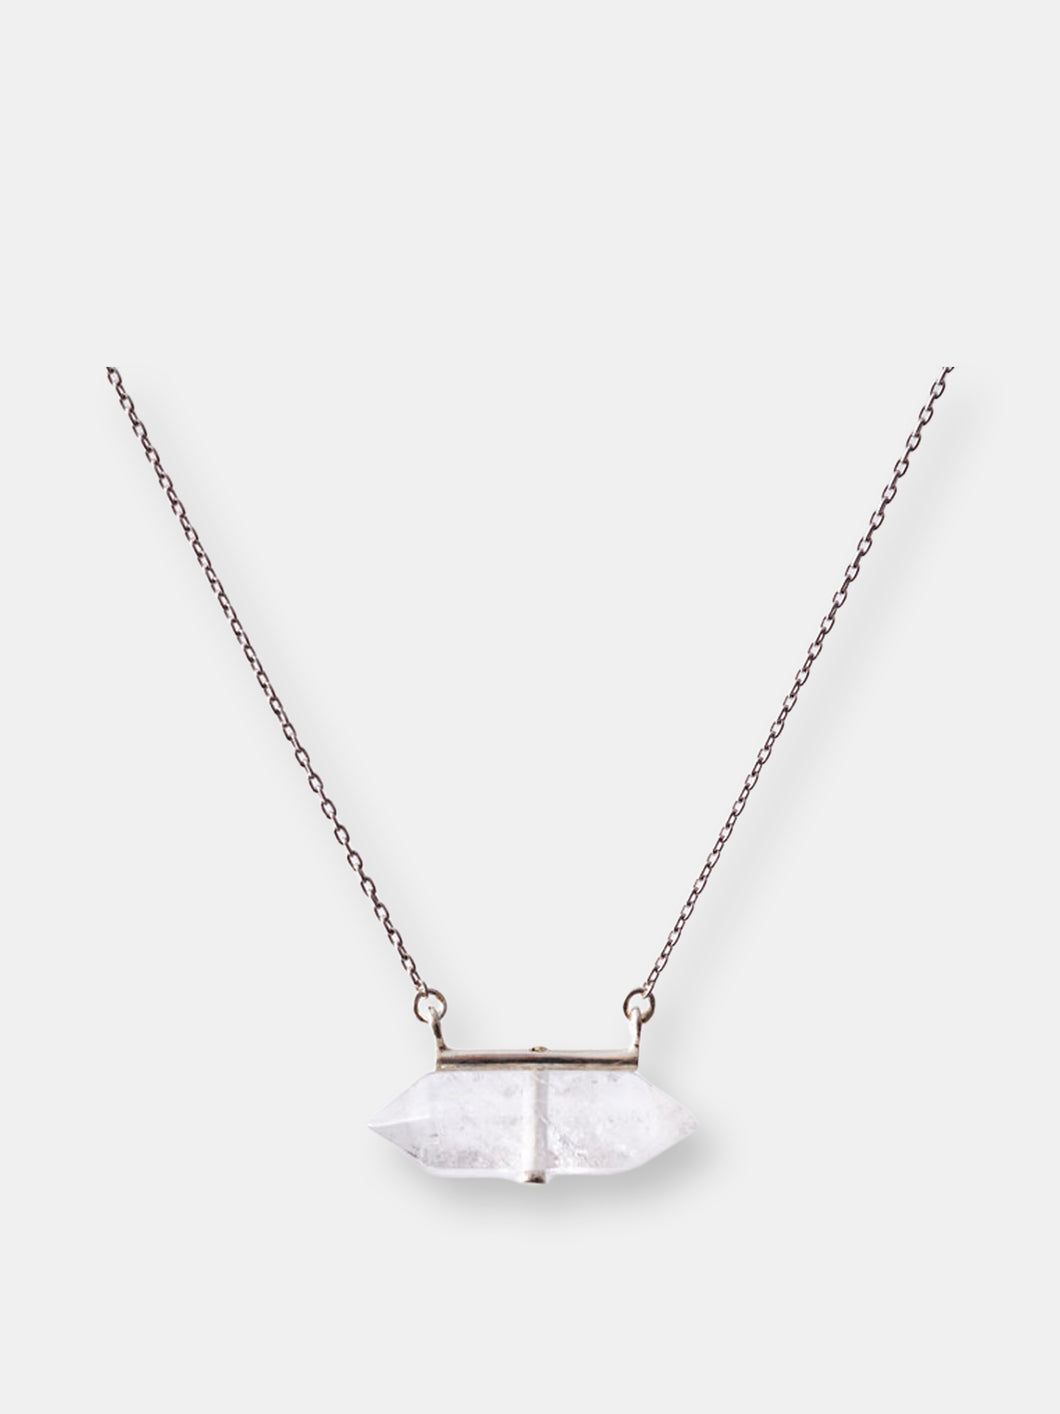 Clear Quartz Horizon Necklace - Silver